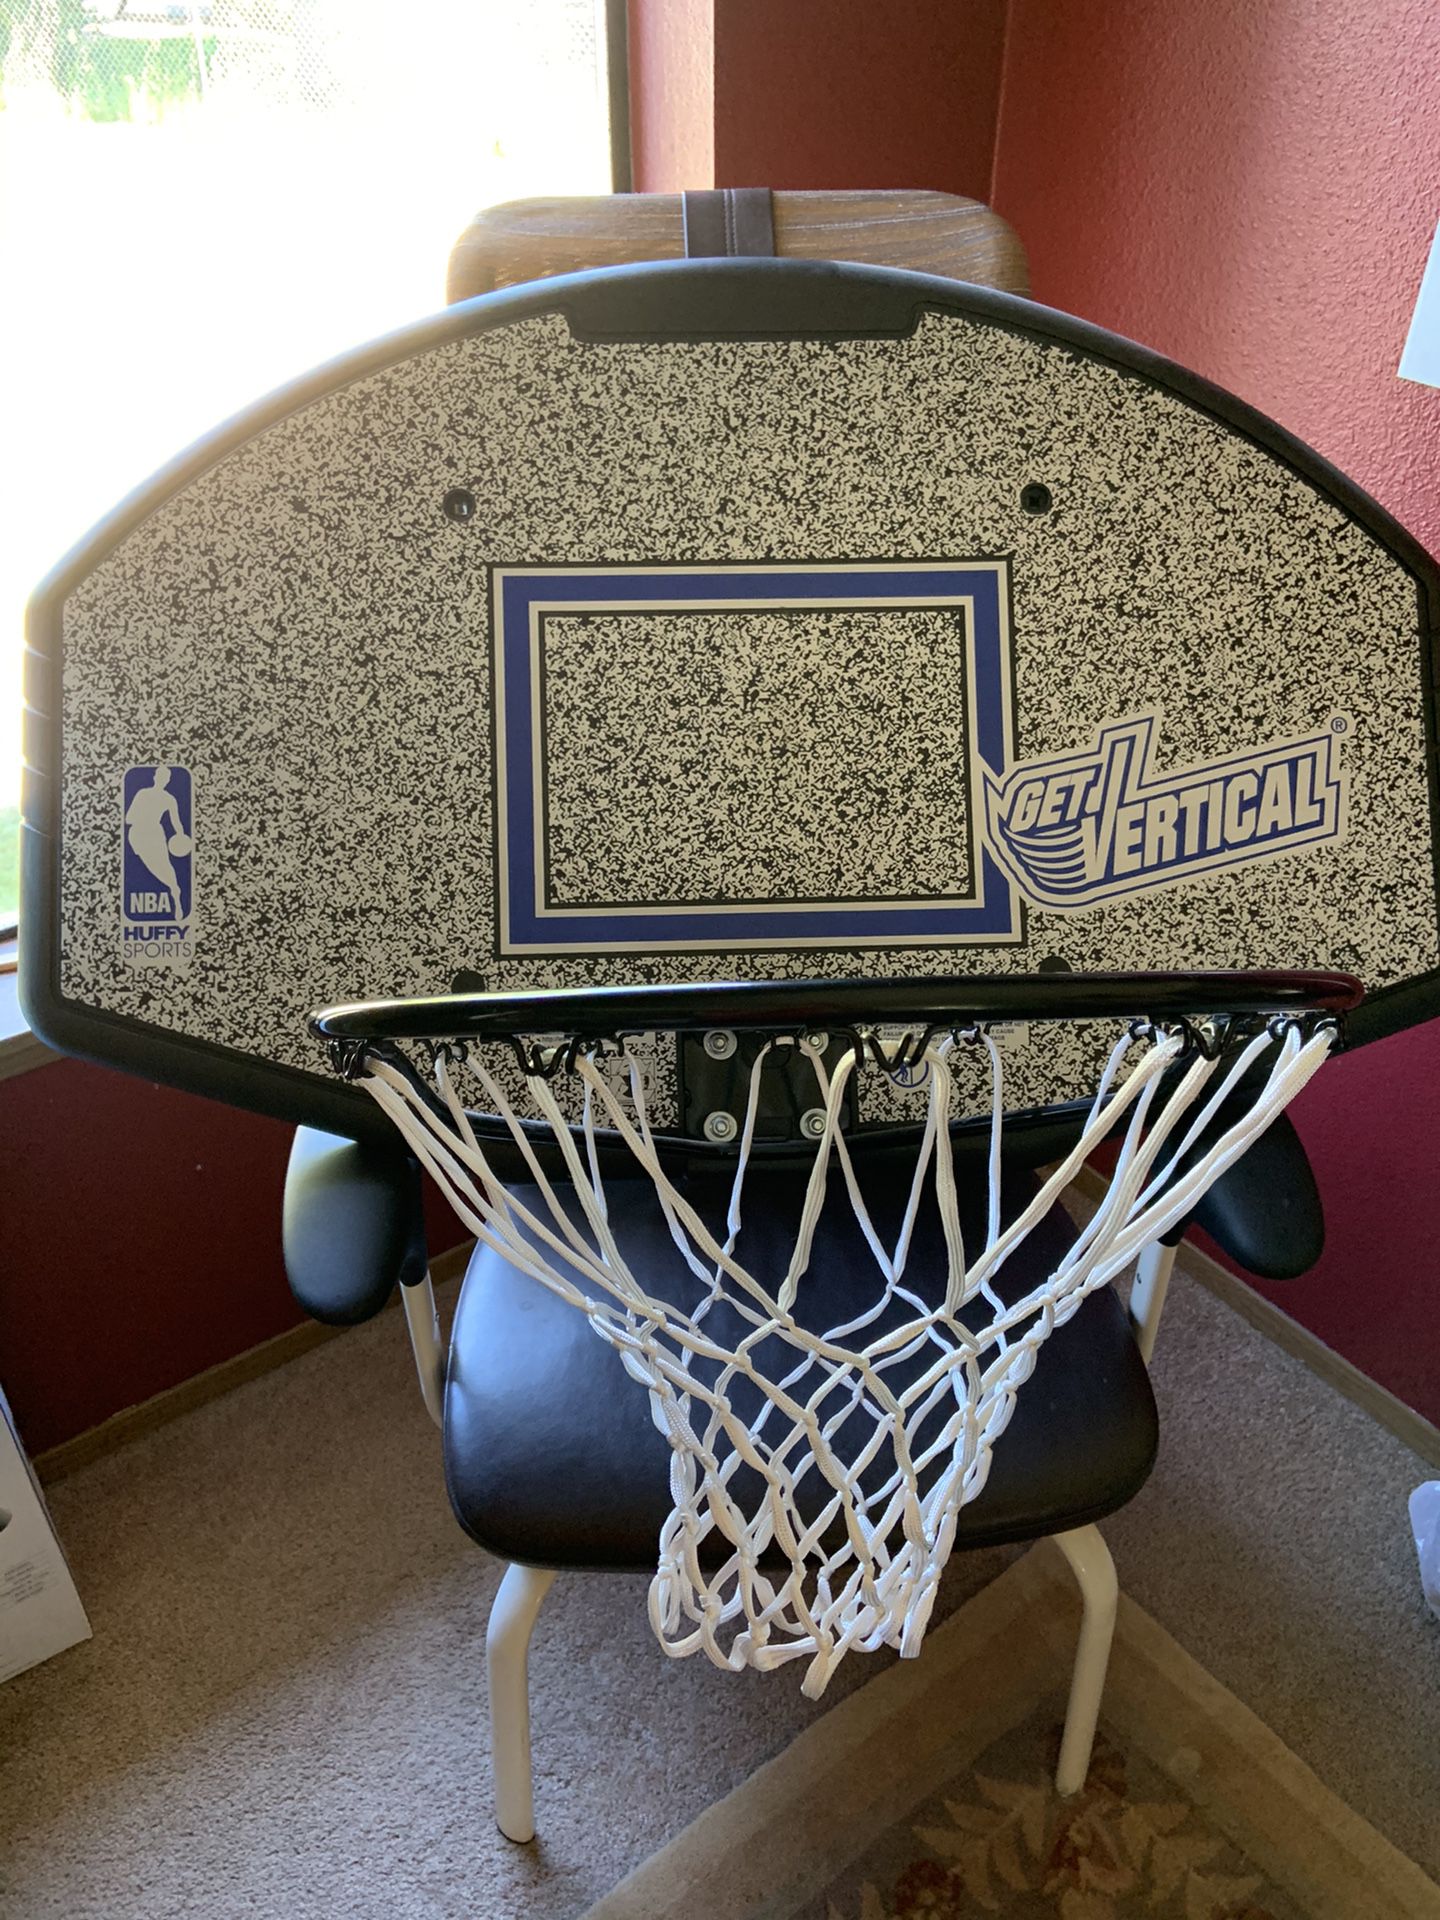 Wall mounted Basketball hoop